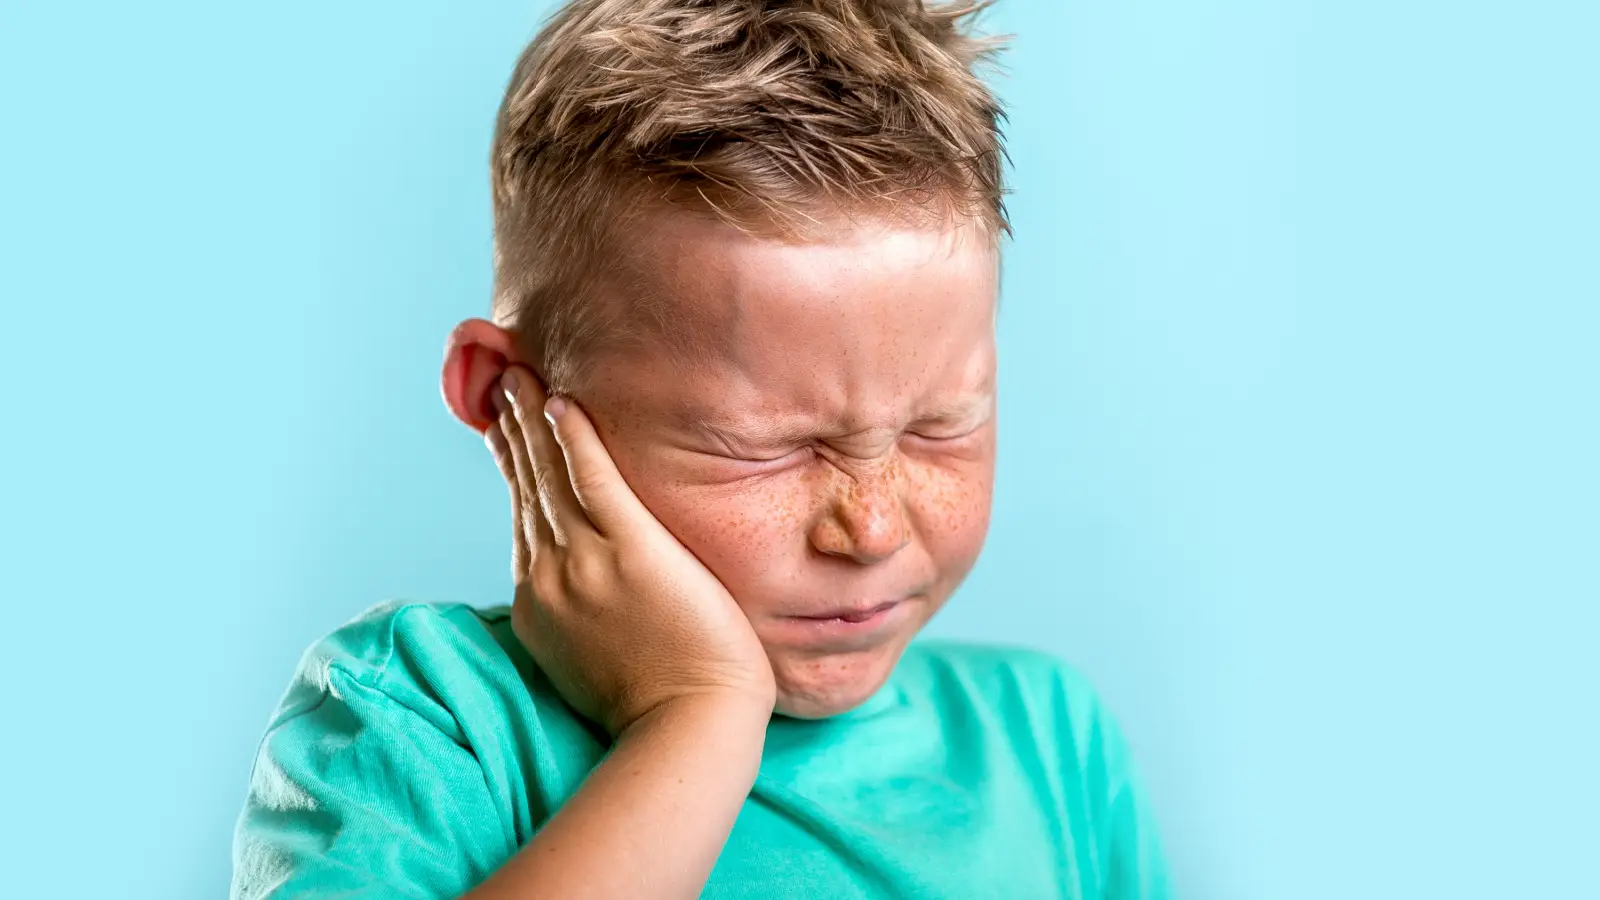 ما أسباب التهاب الاذن عند الاطفال؟ وما أعراضه؟